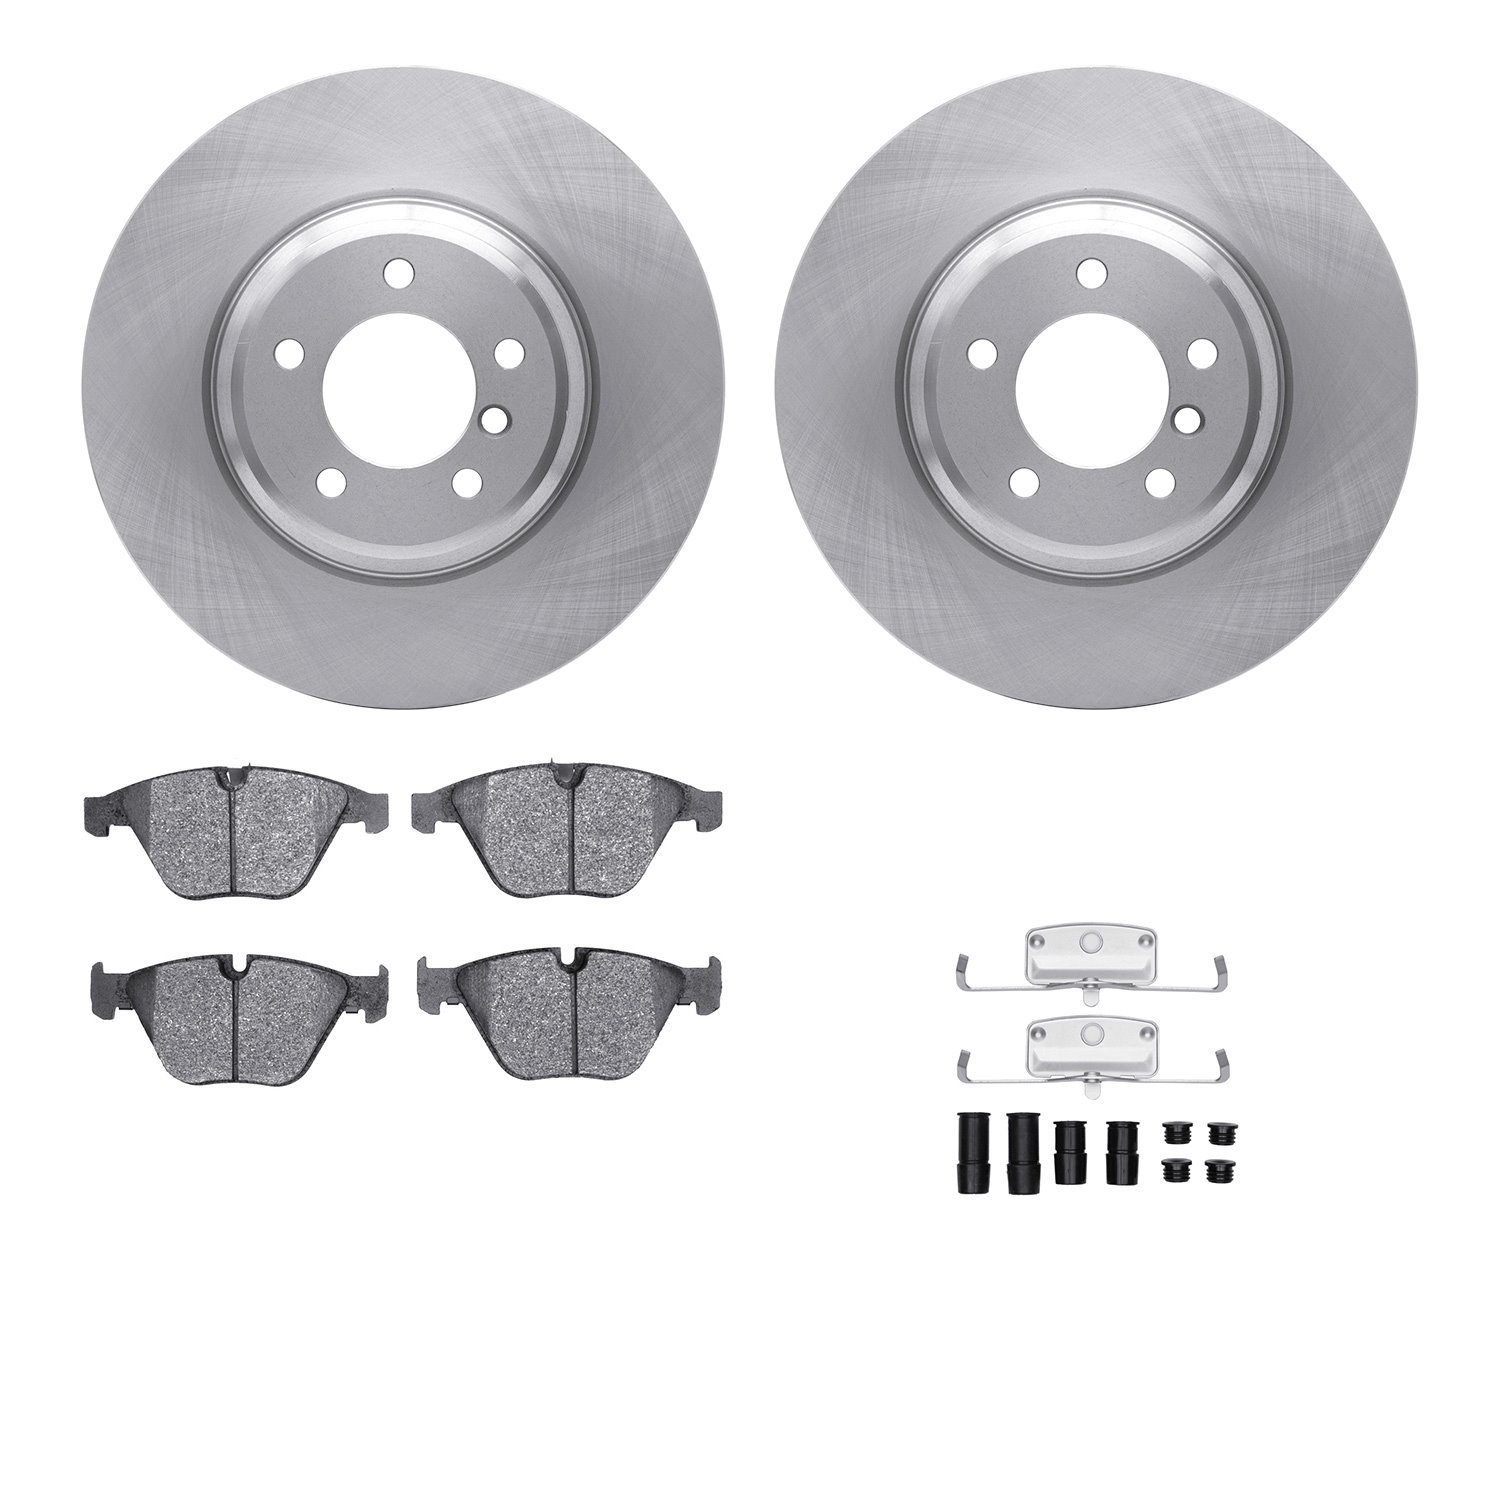 6612-31293 Brake Rotors w/5000 Euro Ceramic Brake Pads Kit with Hardware, 2007-2015 BMW, Position: Front